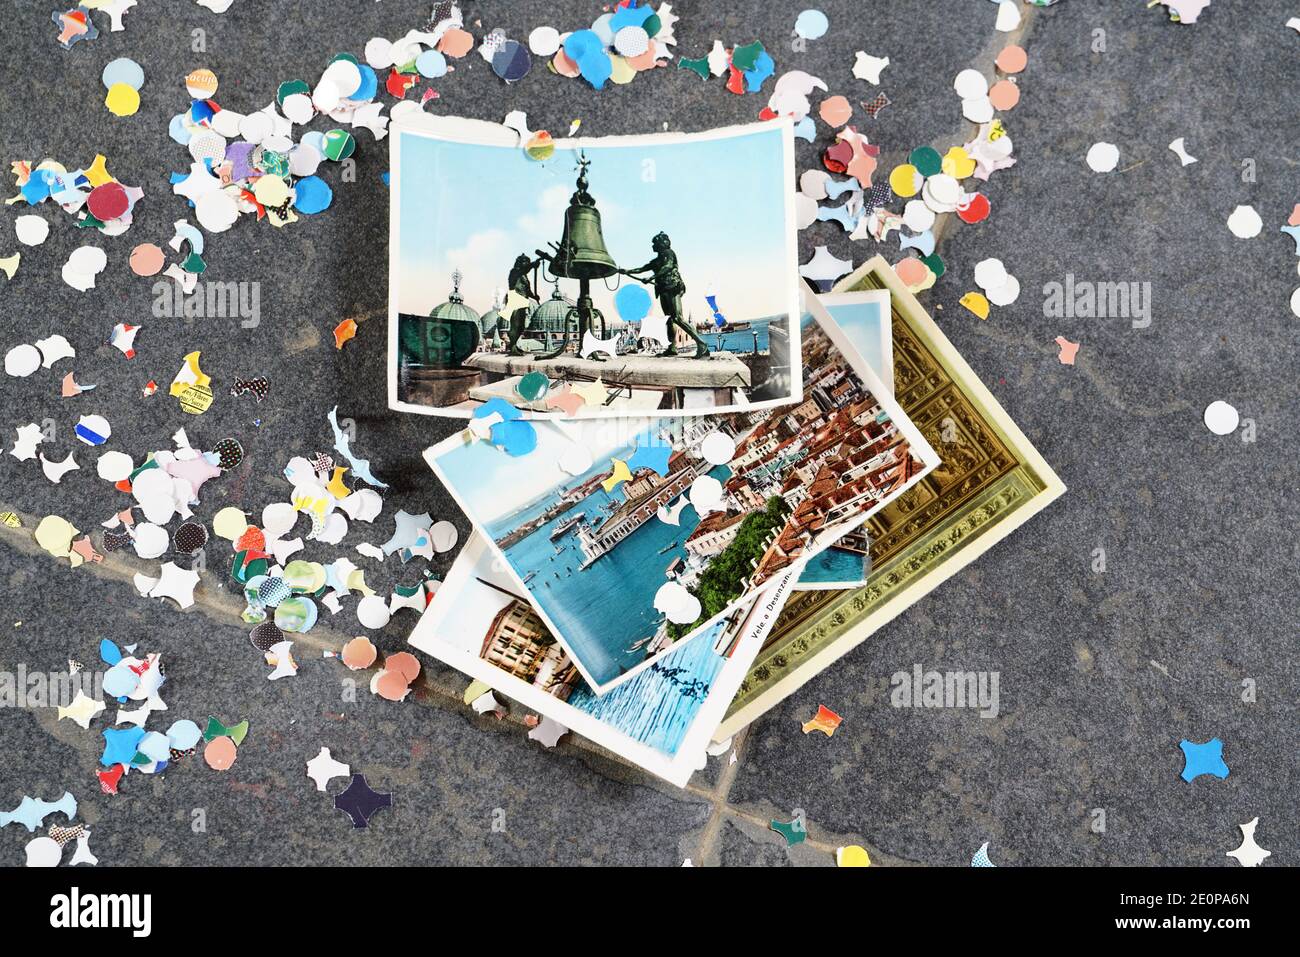 Venezia - 10/202/2020: Confetti e cartoline di venezia per il carnevale in blocco Foto Stock